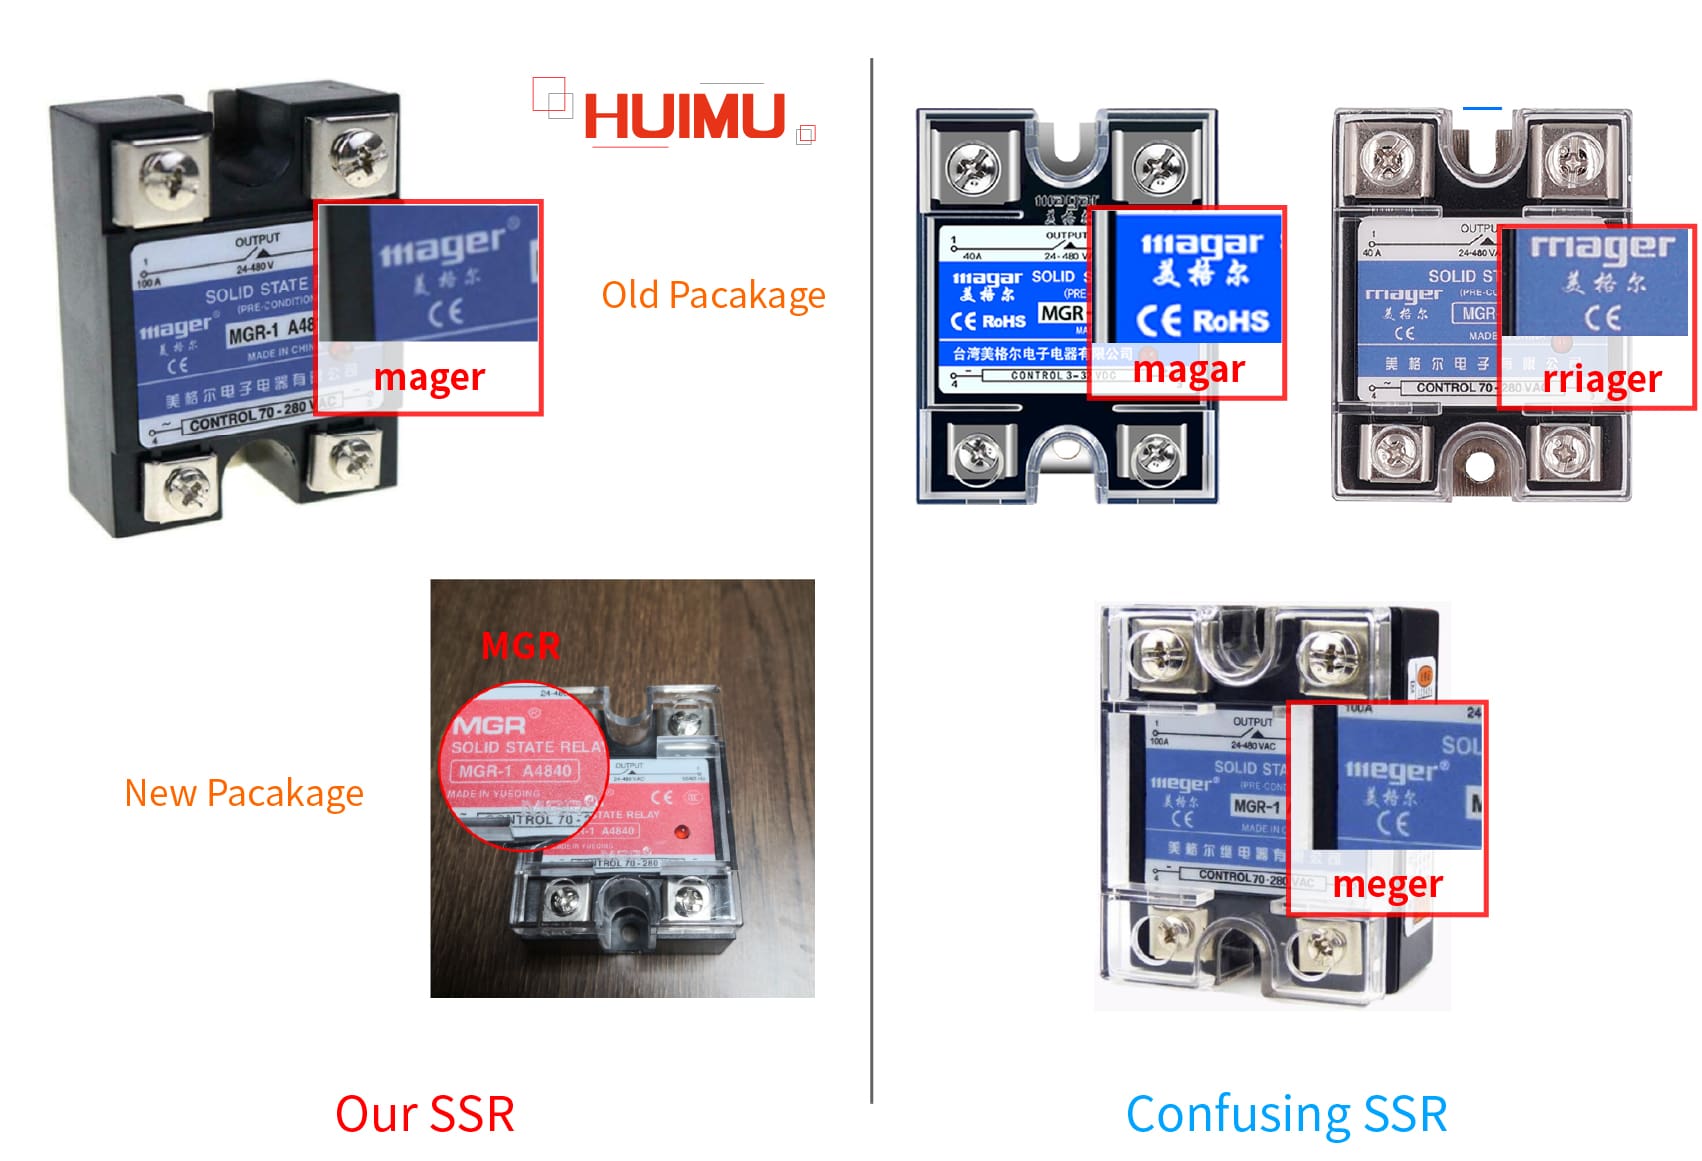 Our SSR vs Confusing SSR. More detail via www.@huimultd.com